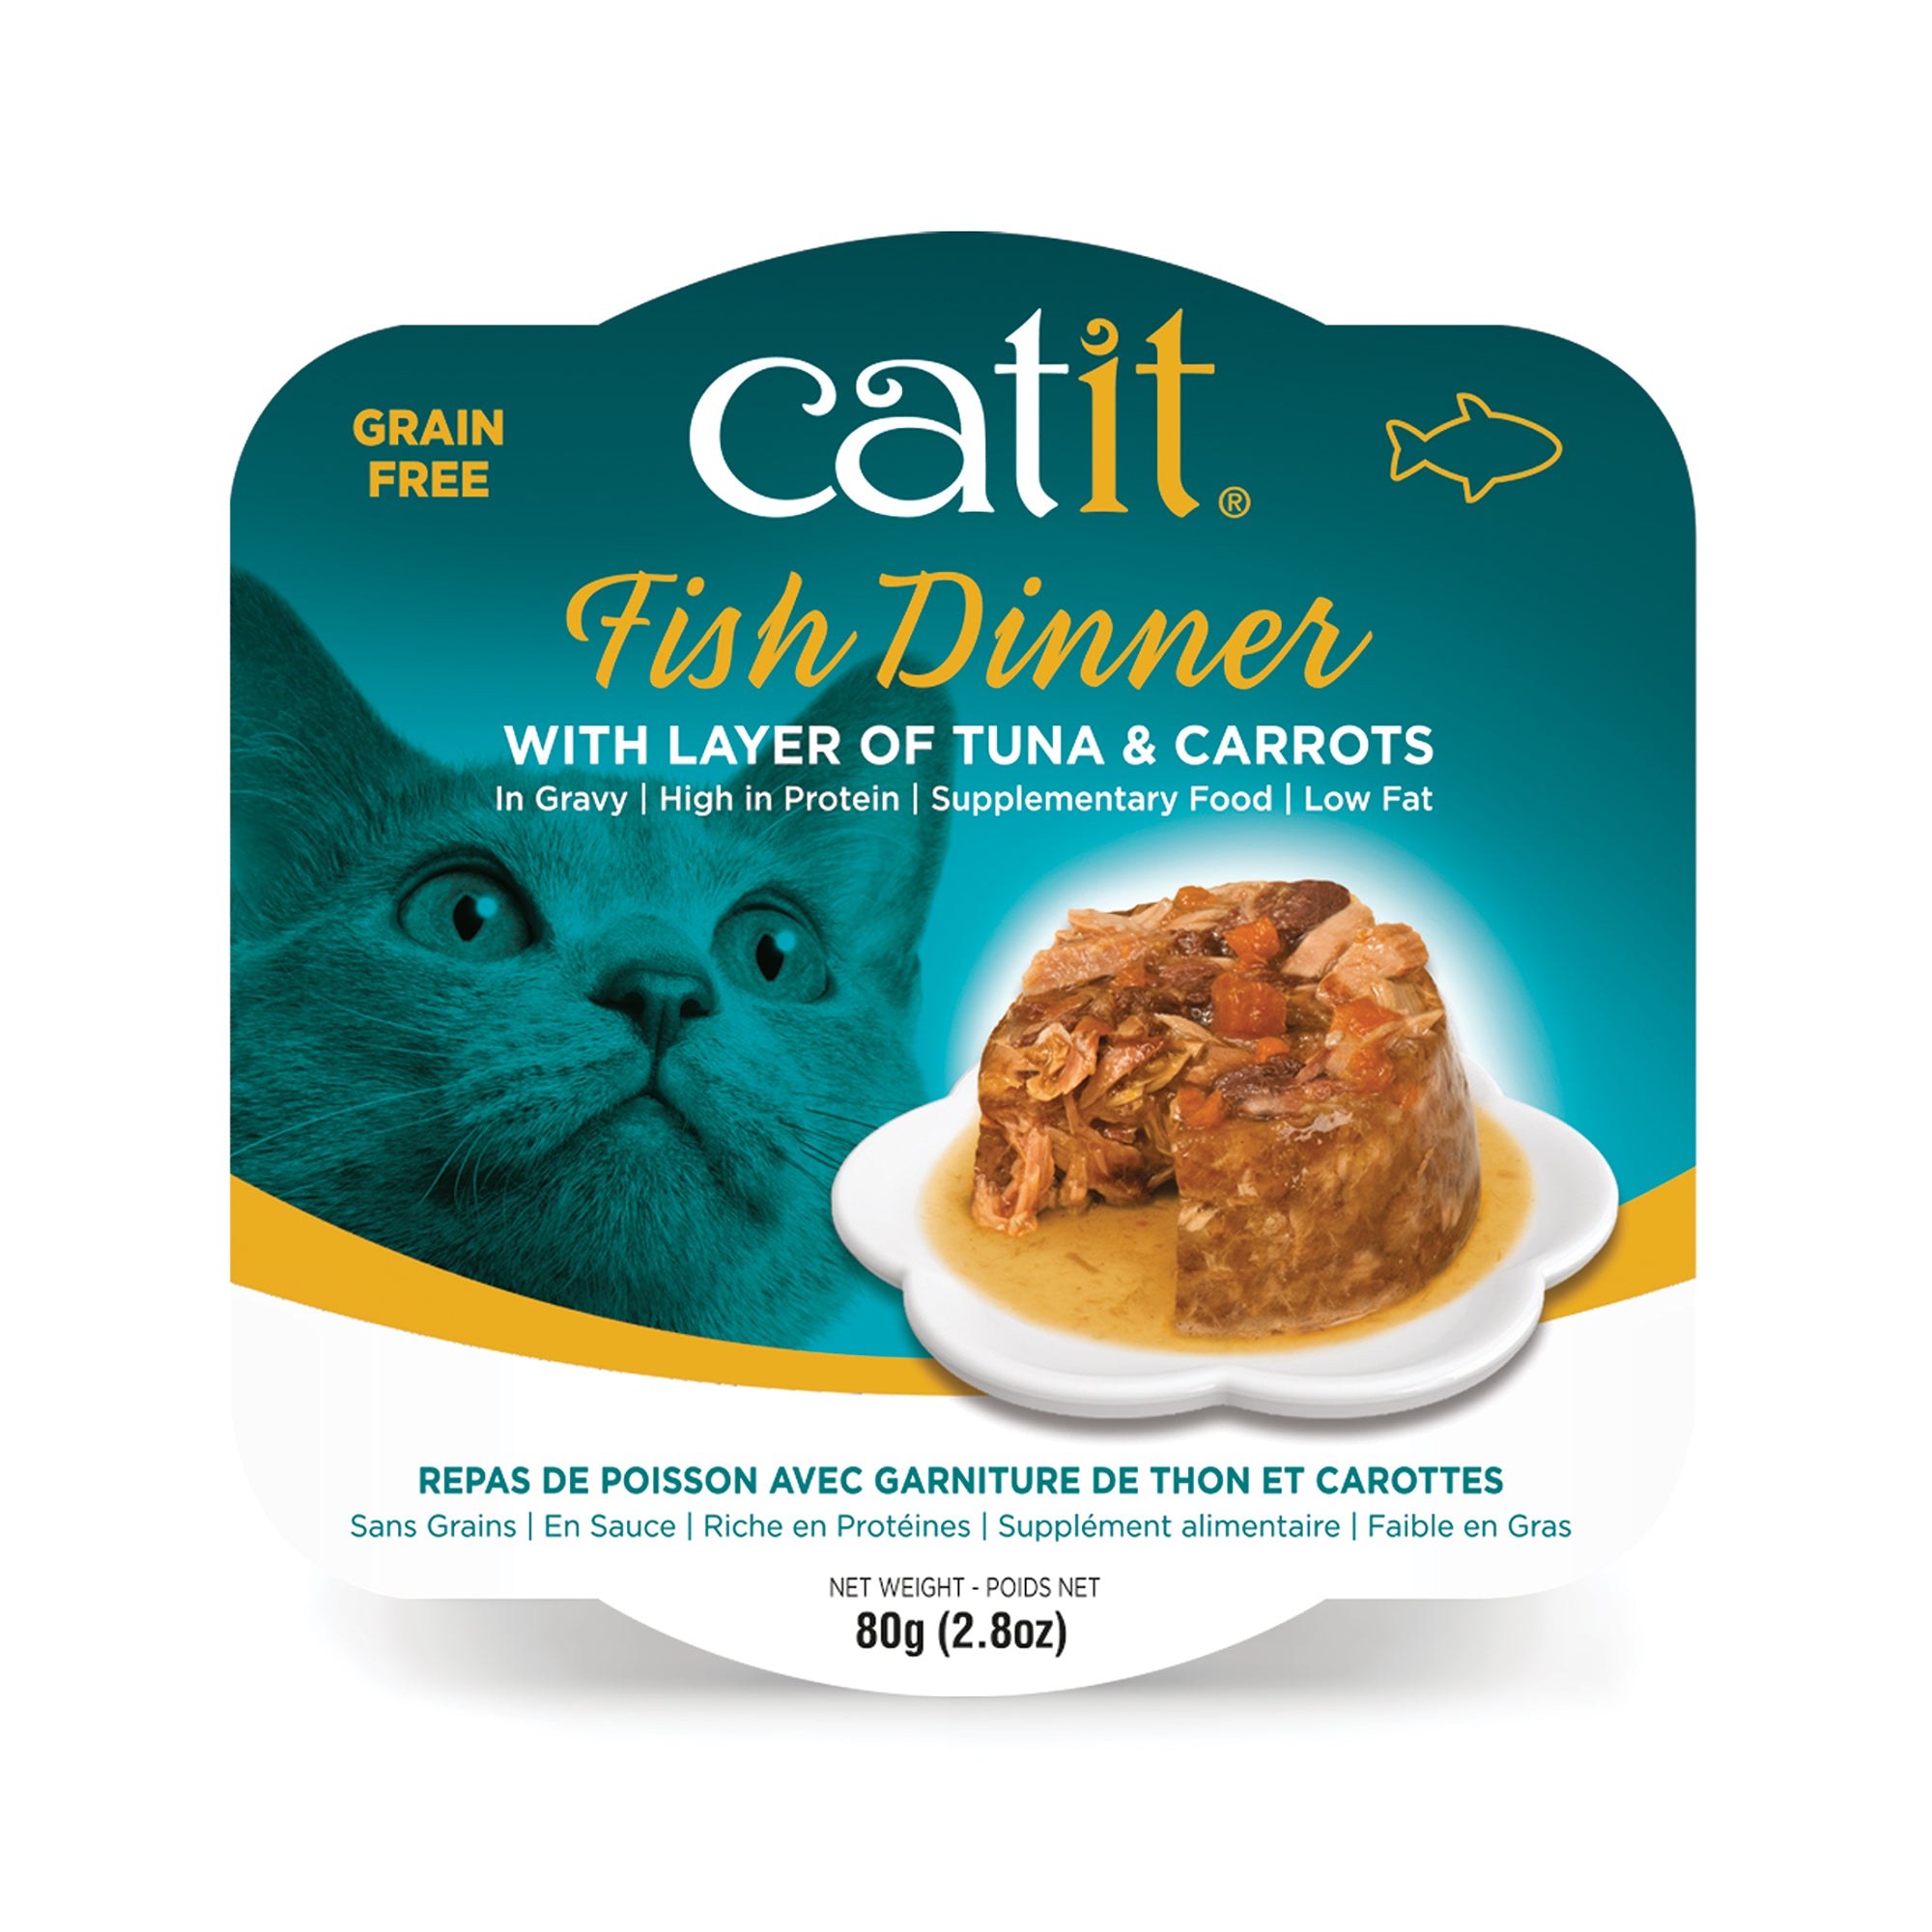 Repas de poisson Catit avec thon et carottes, 80 g (2,8 oz)